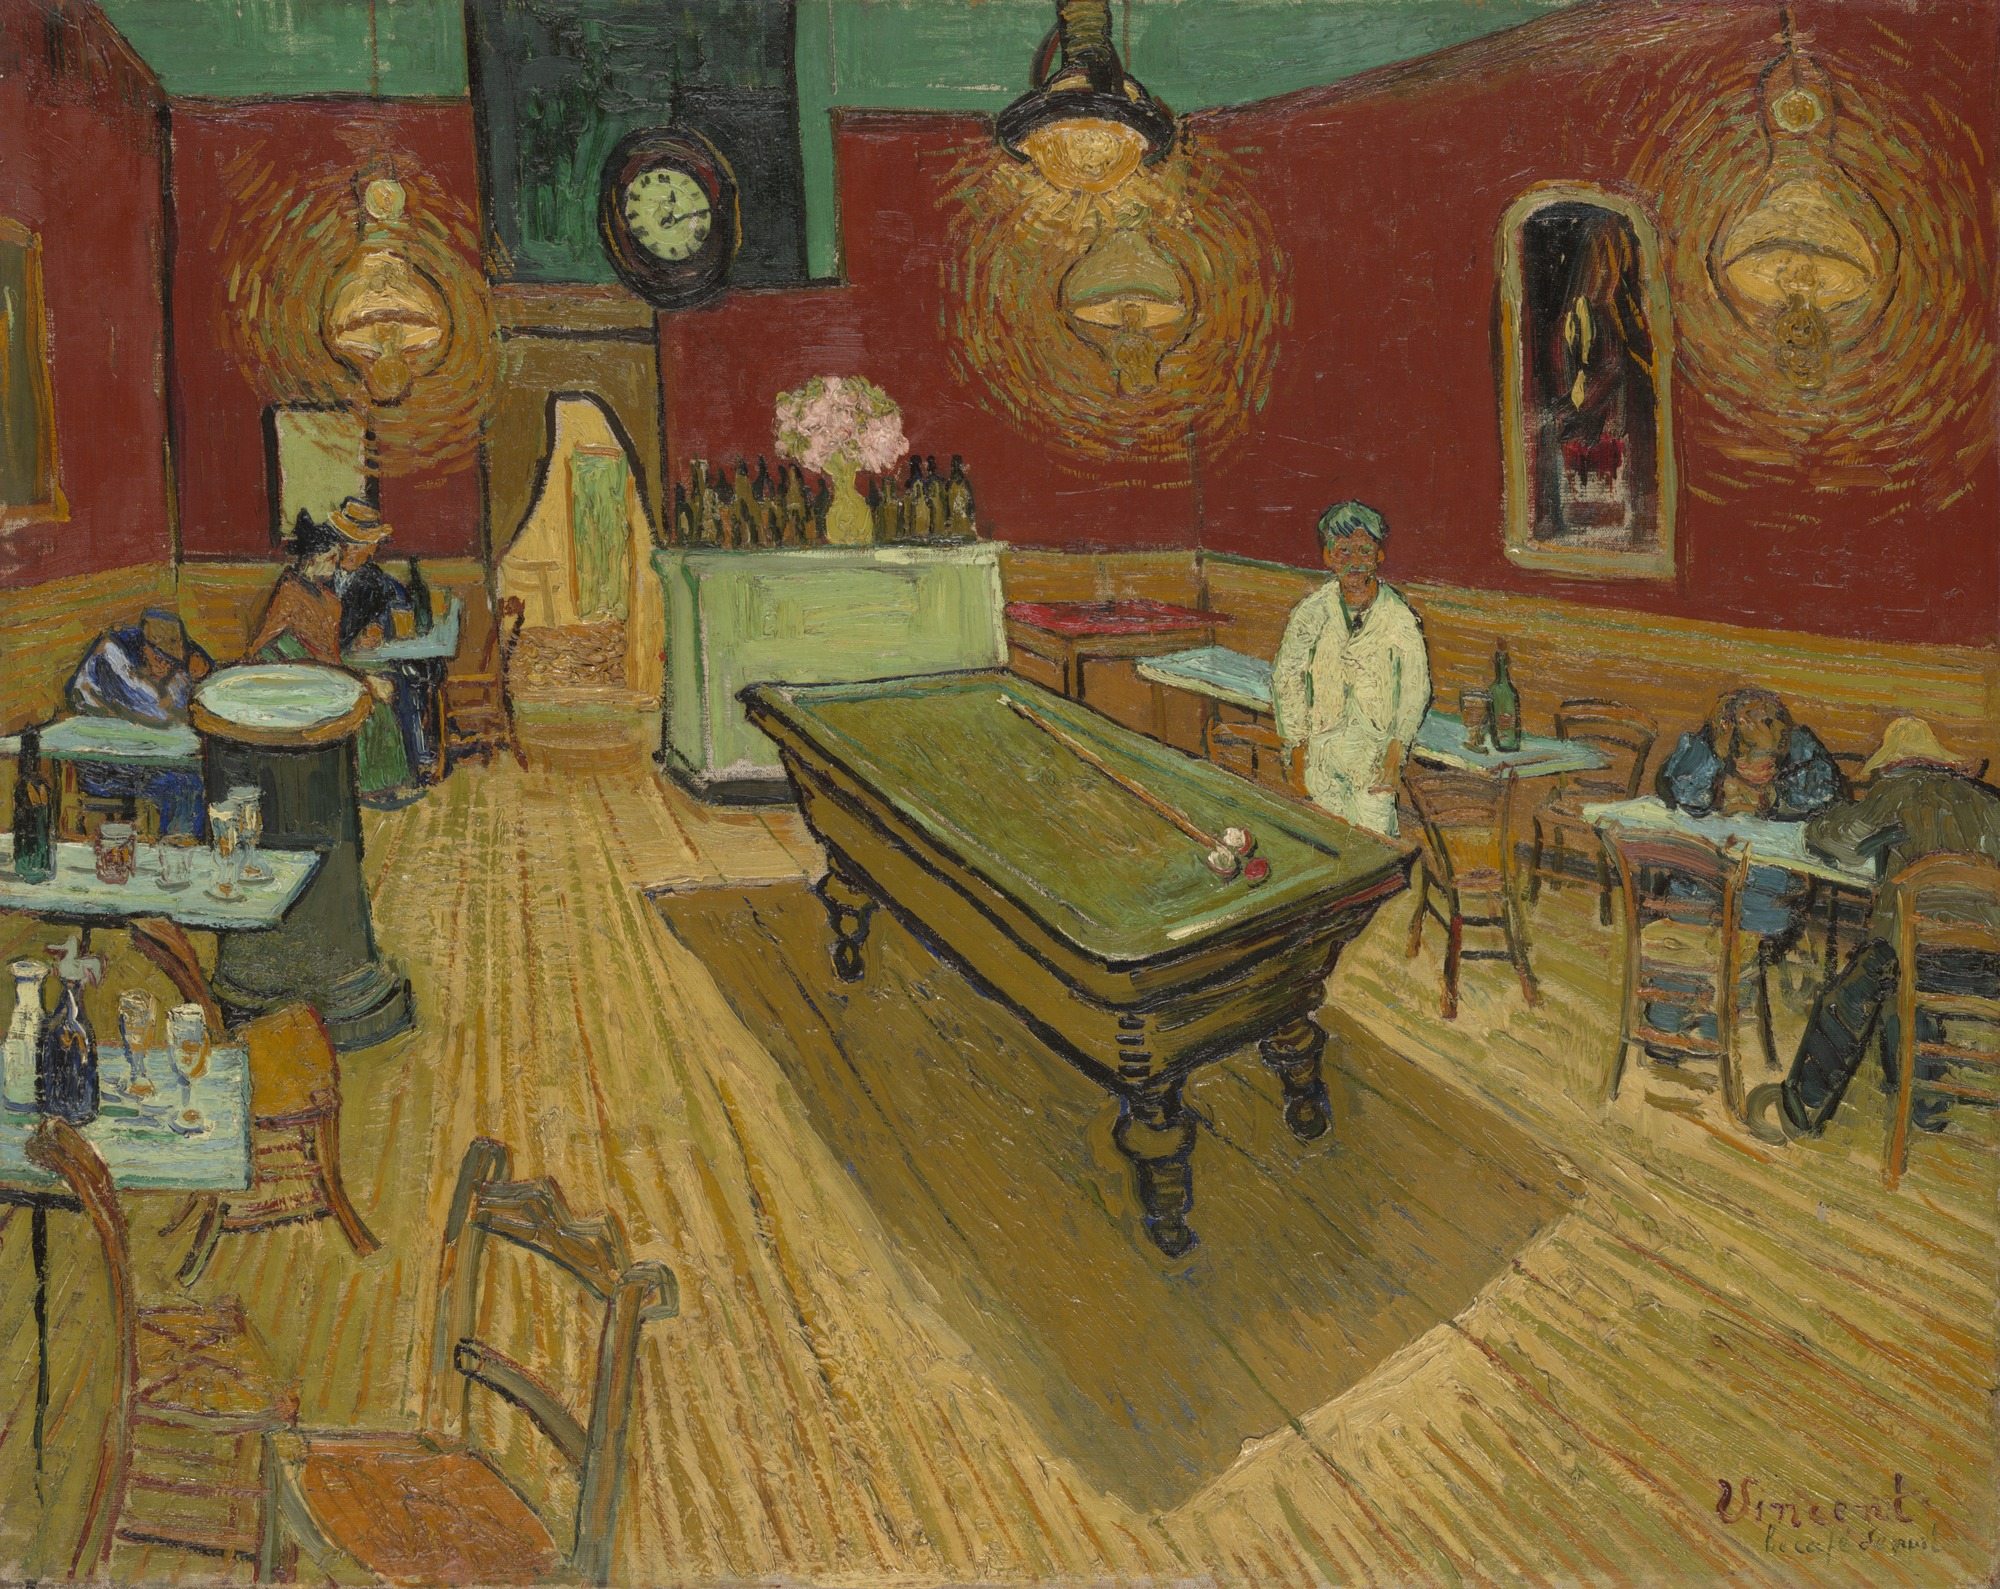 Ночное кафе by Винсе́нт Виллем Ван Гог - 1888 - 72.4 × 92.1 см 